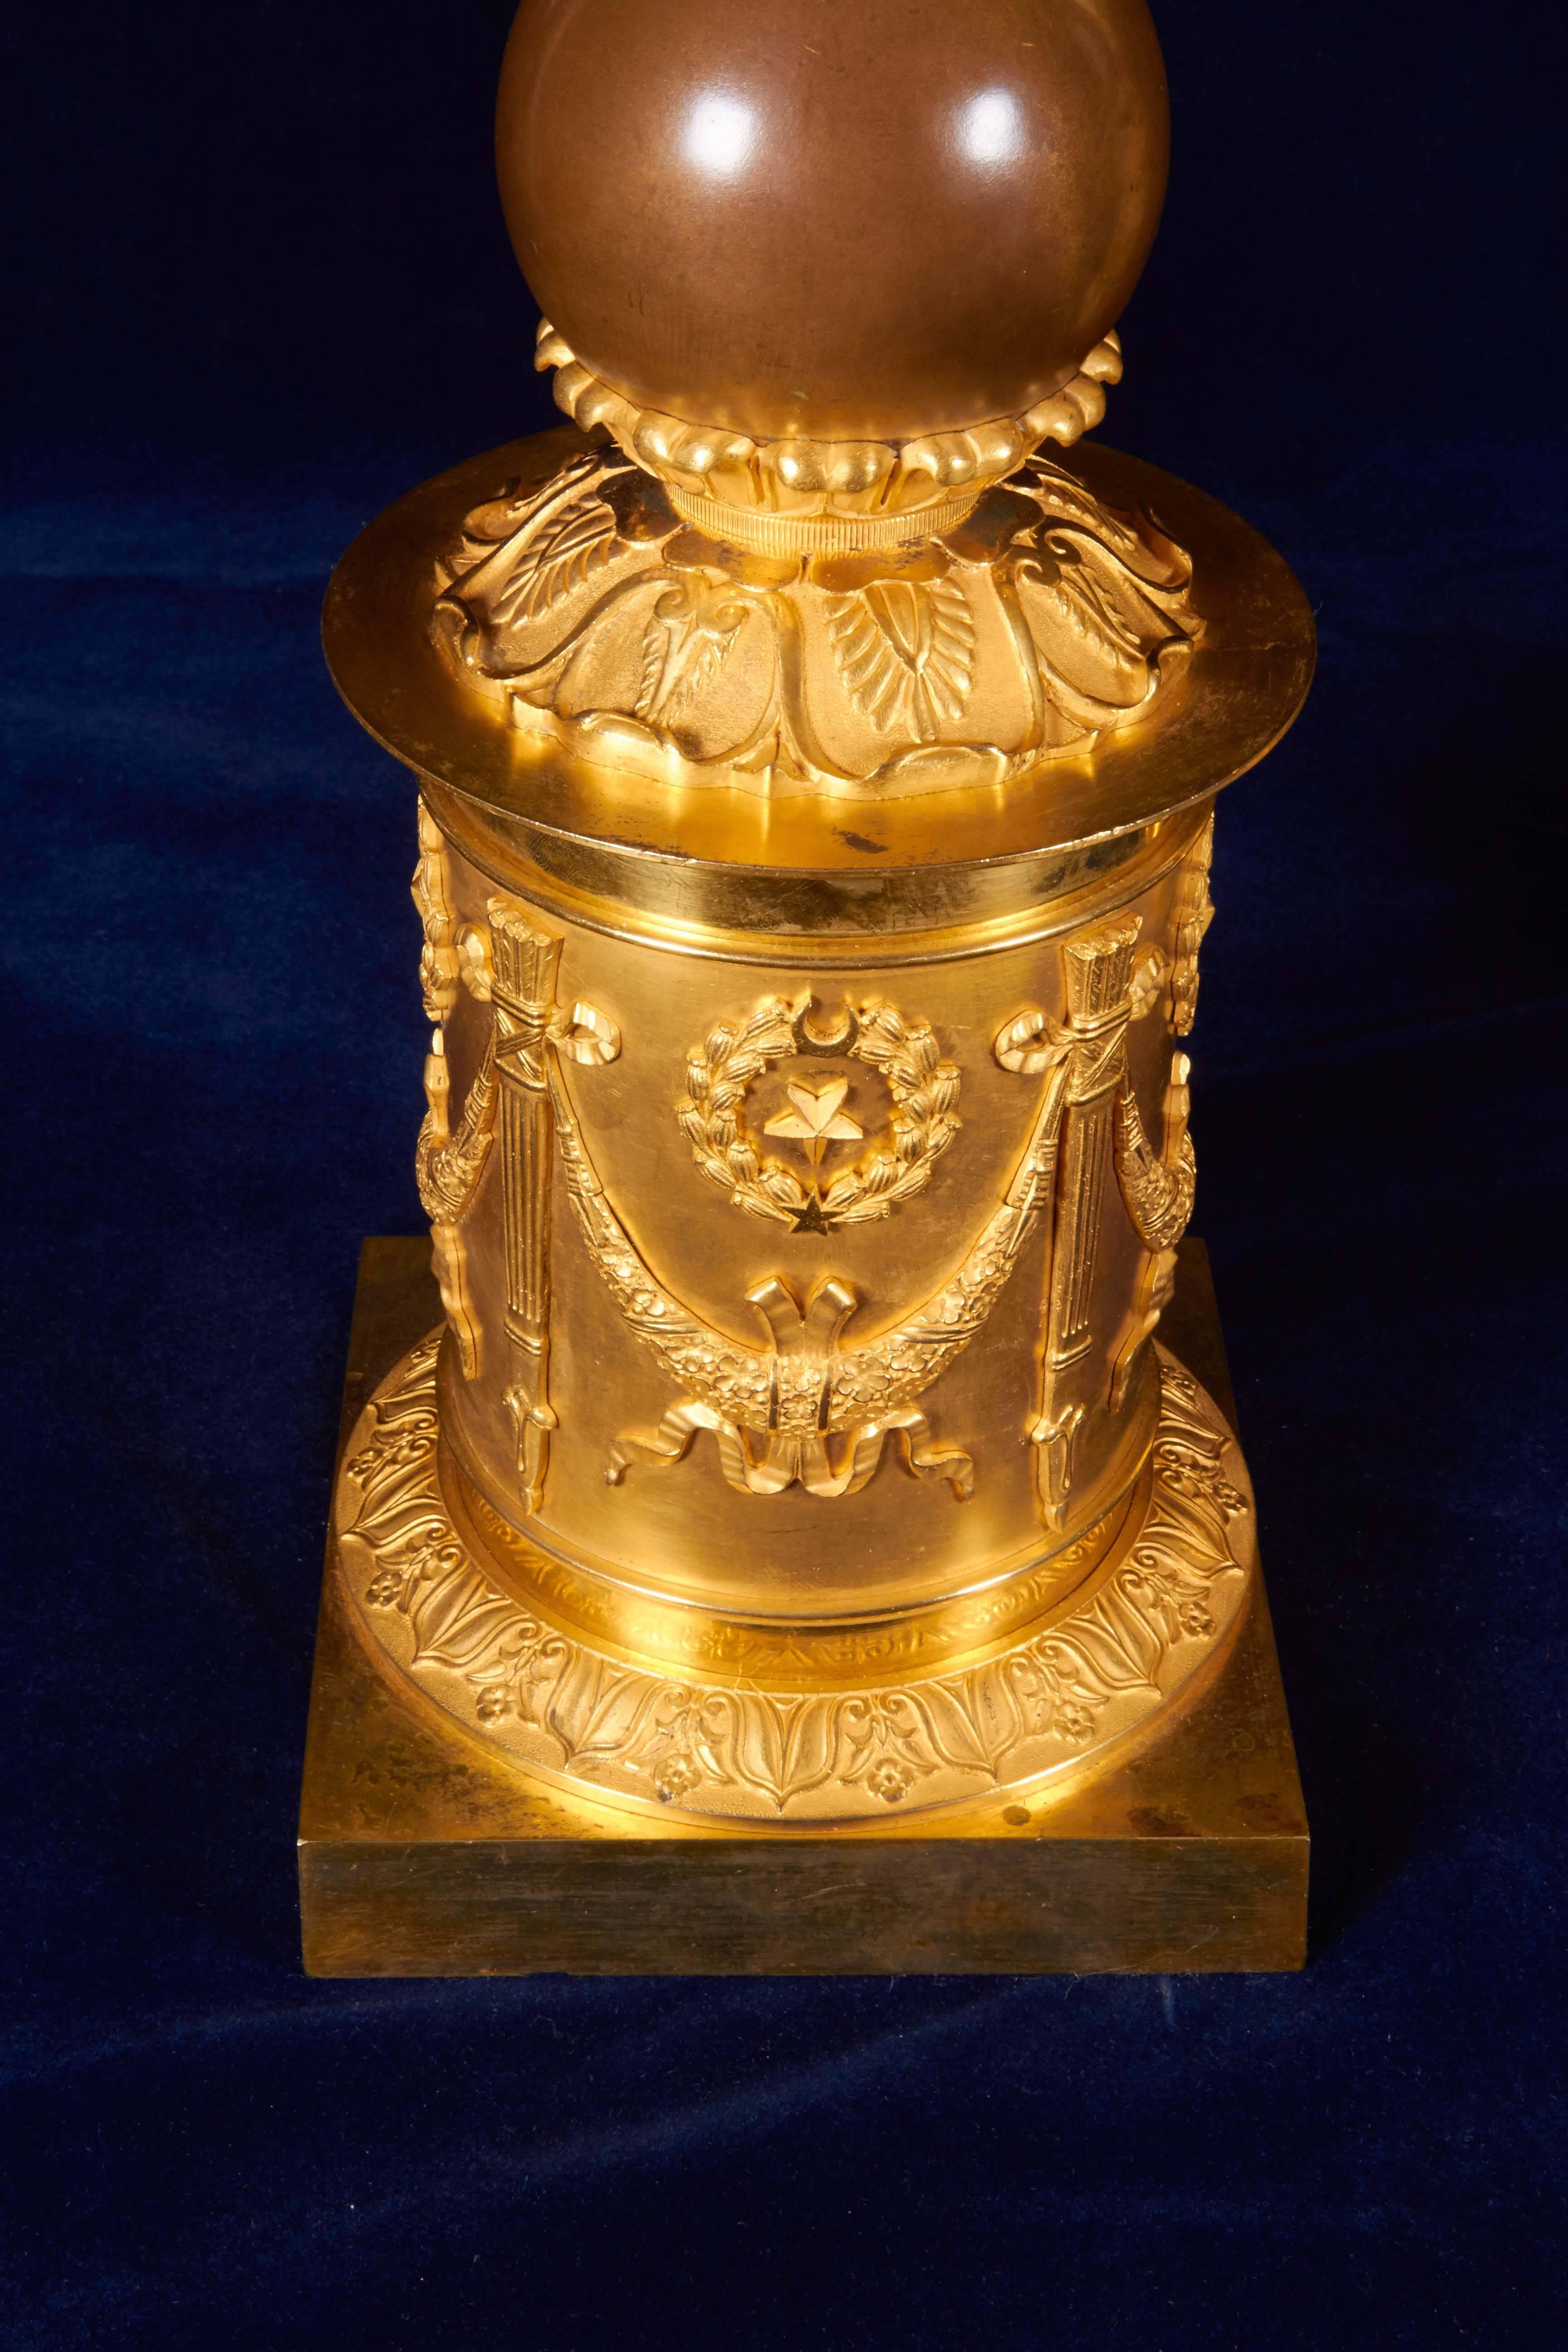 Une magnifique paire de candélabres figuratifs en bronze doré de la période Empire français. Chacun de ces magnifiques candélabres à cinq bras est méticuleusement moulé et ciselé à la main avec les détails les plus fins possibles et présente une